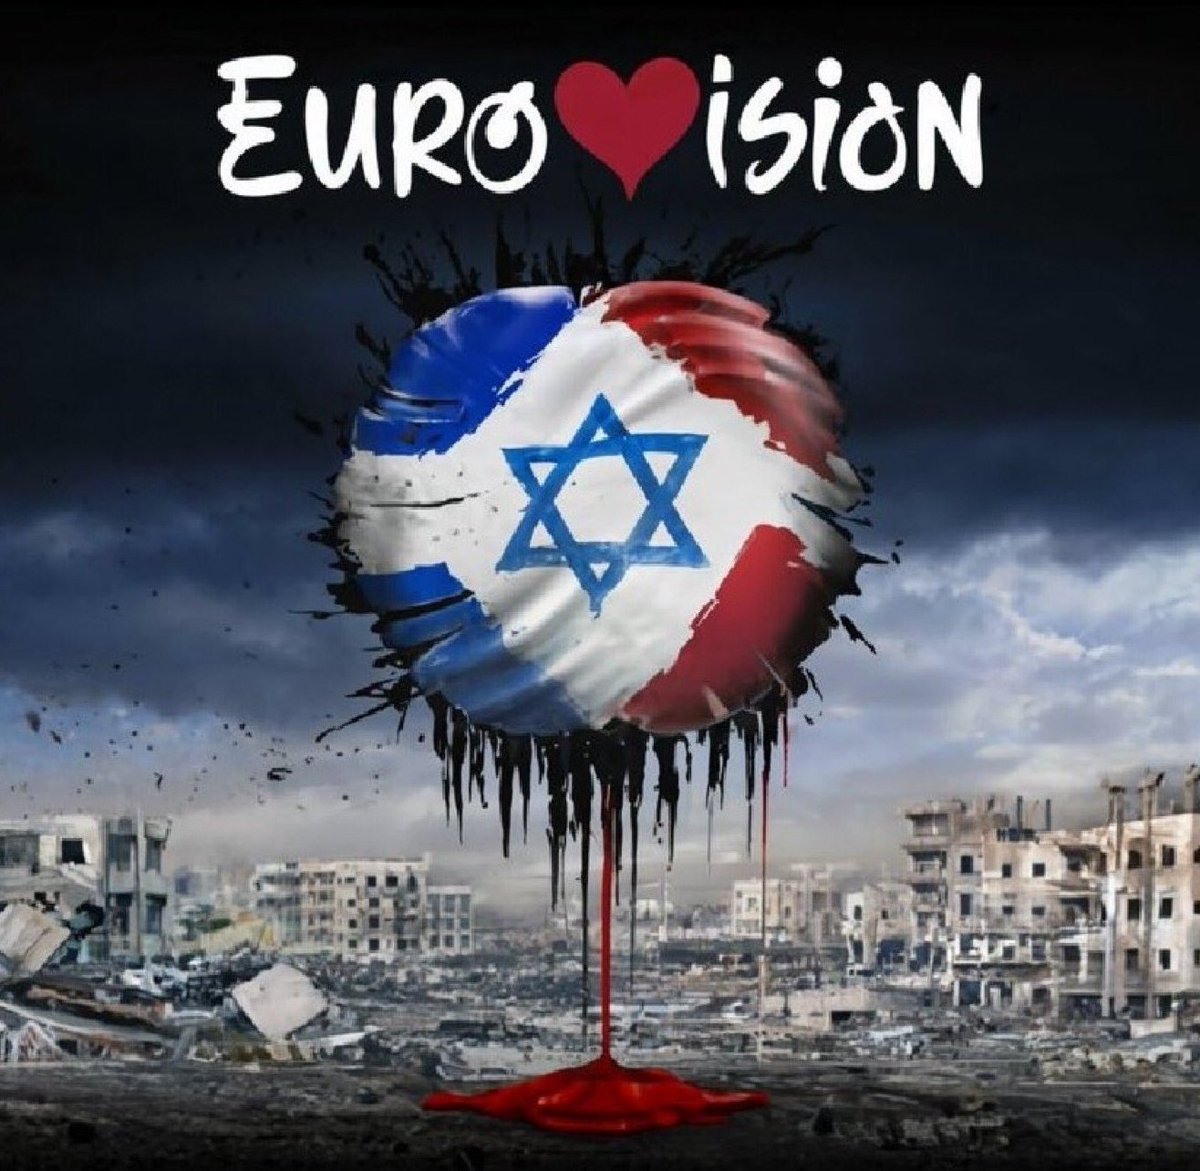 Cette année, on boycotte l'Eurovision après son refus d'exclure Israël ! 1️⃣Bloquez l'@Eurovision sur tous les réseaux (Tiktok, Insta, X, Fb...). 2️⃣Ne regardez pas une seule minute de l'émission (ni en direct ni en replay) 3️⃣Ne votez pas. 4️⃣Twittez #BoycottEurovision